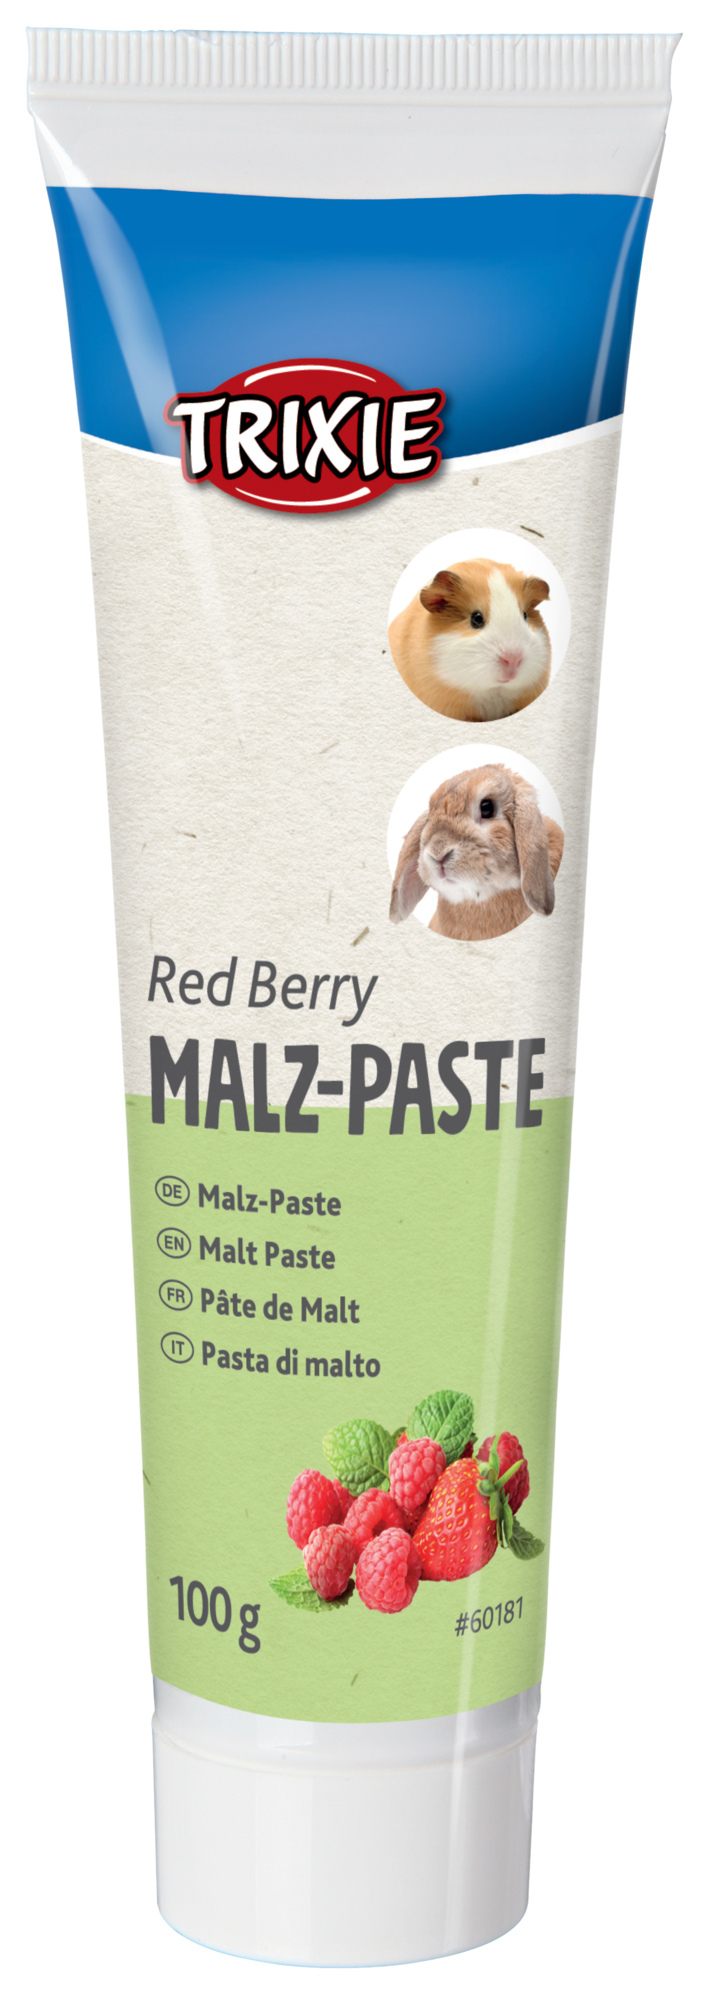 Malz-Paste